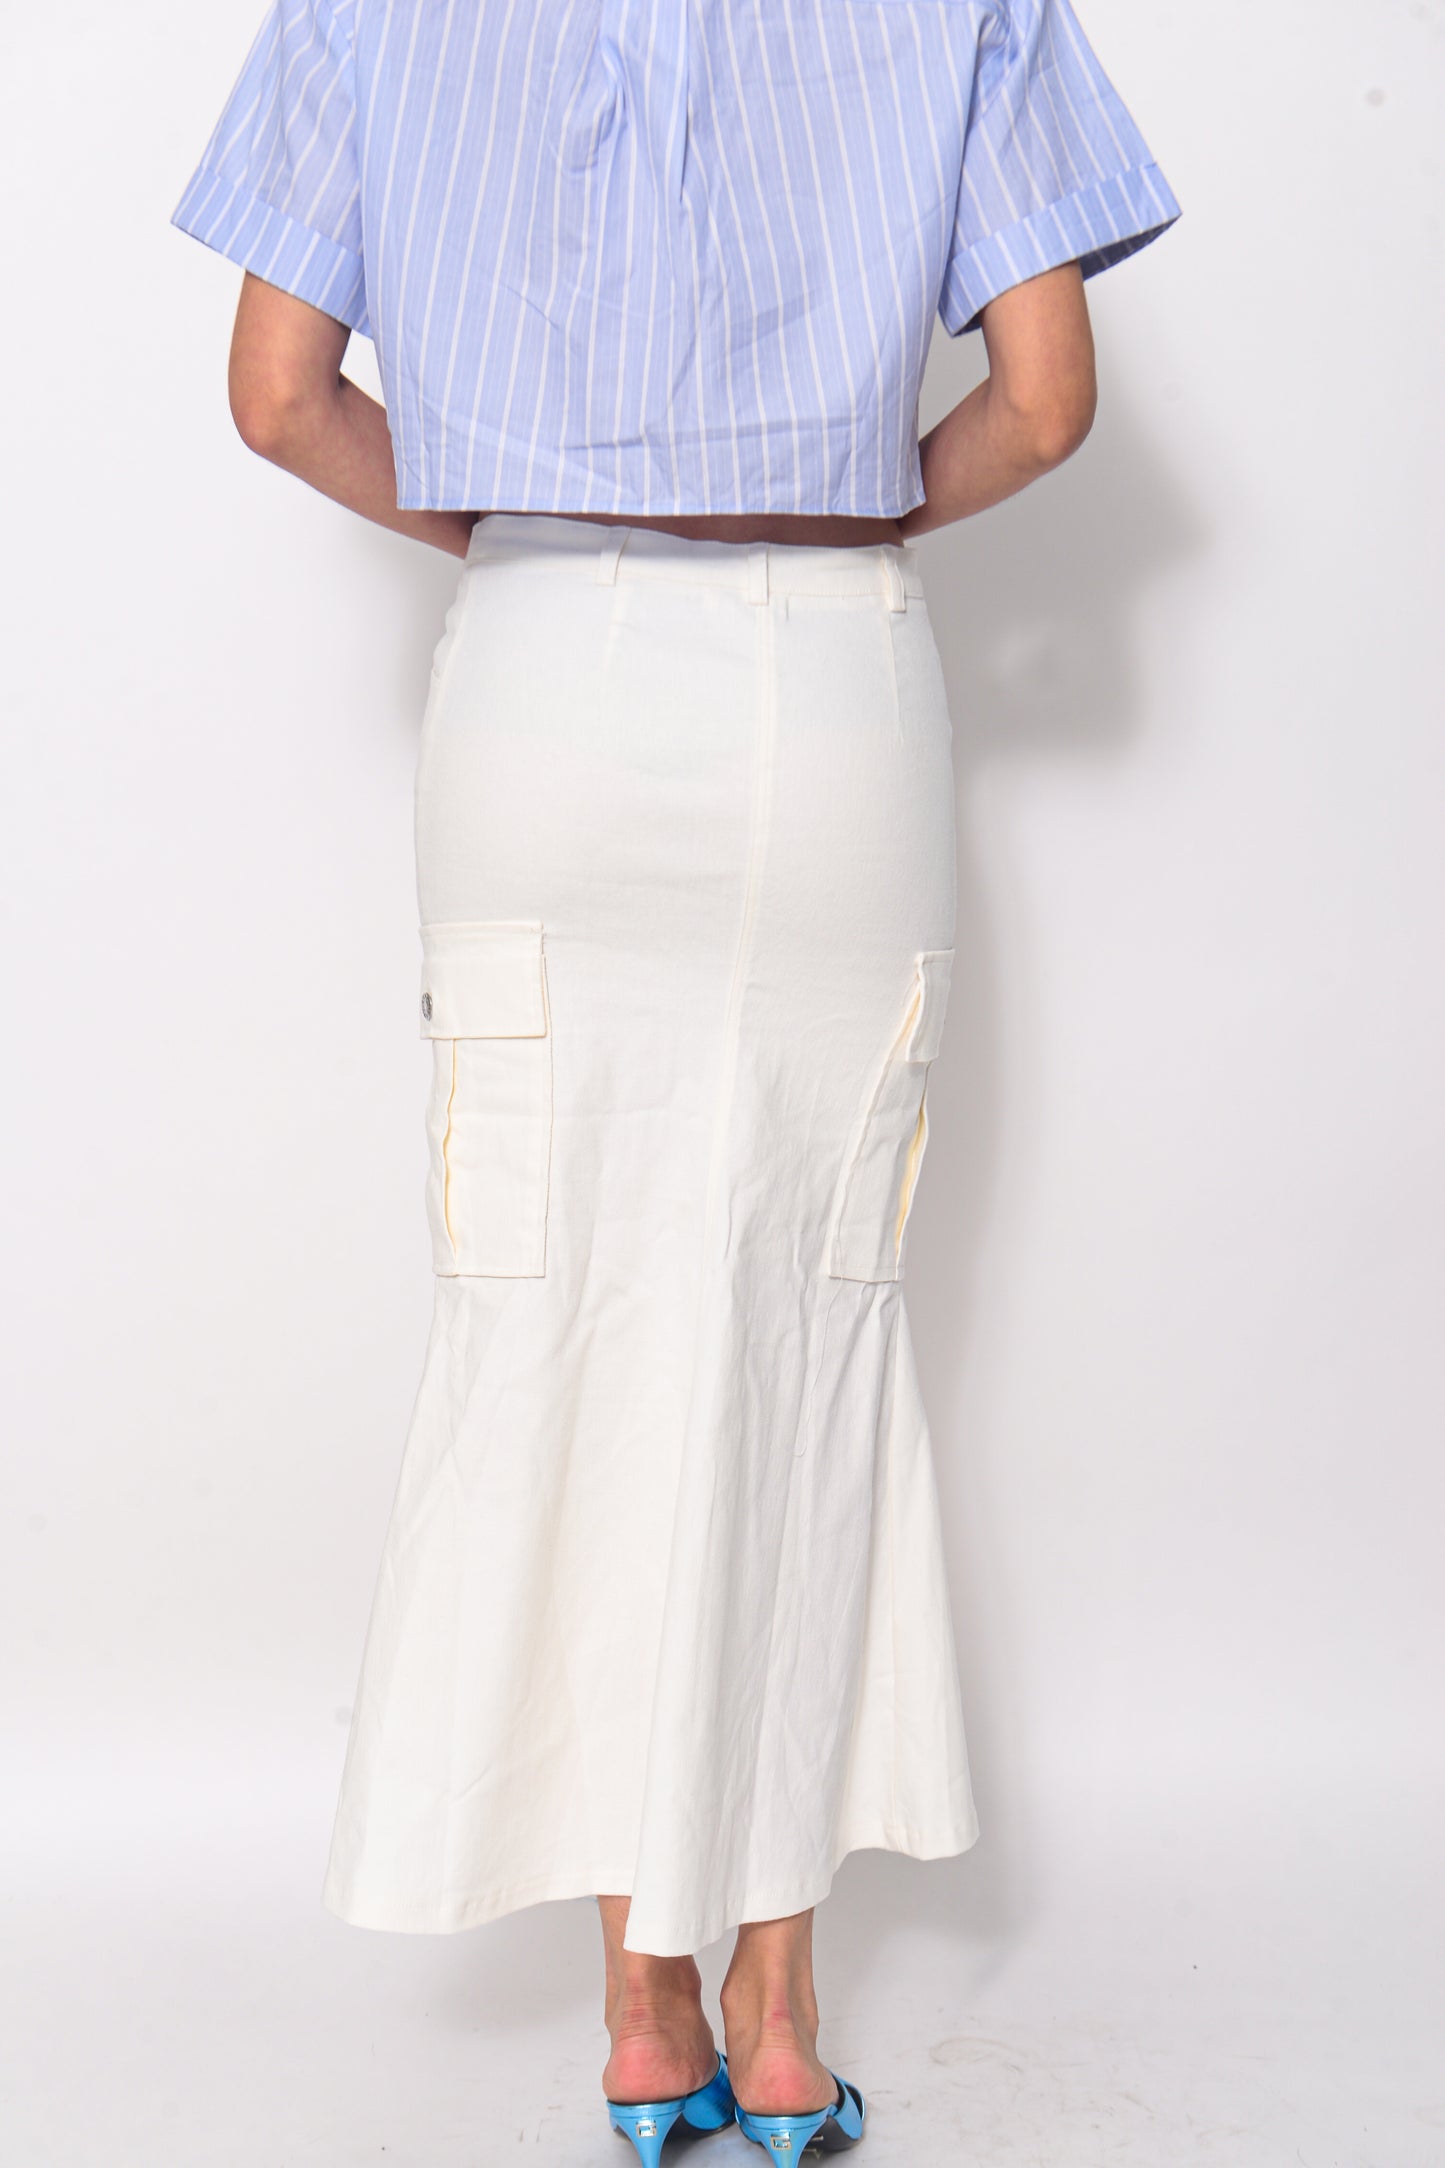 Asymmetrical white skirt